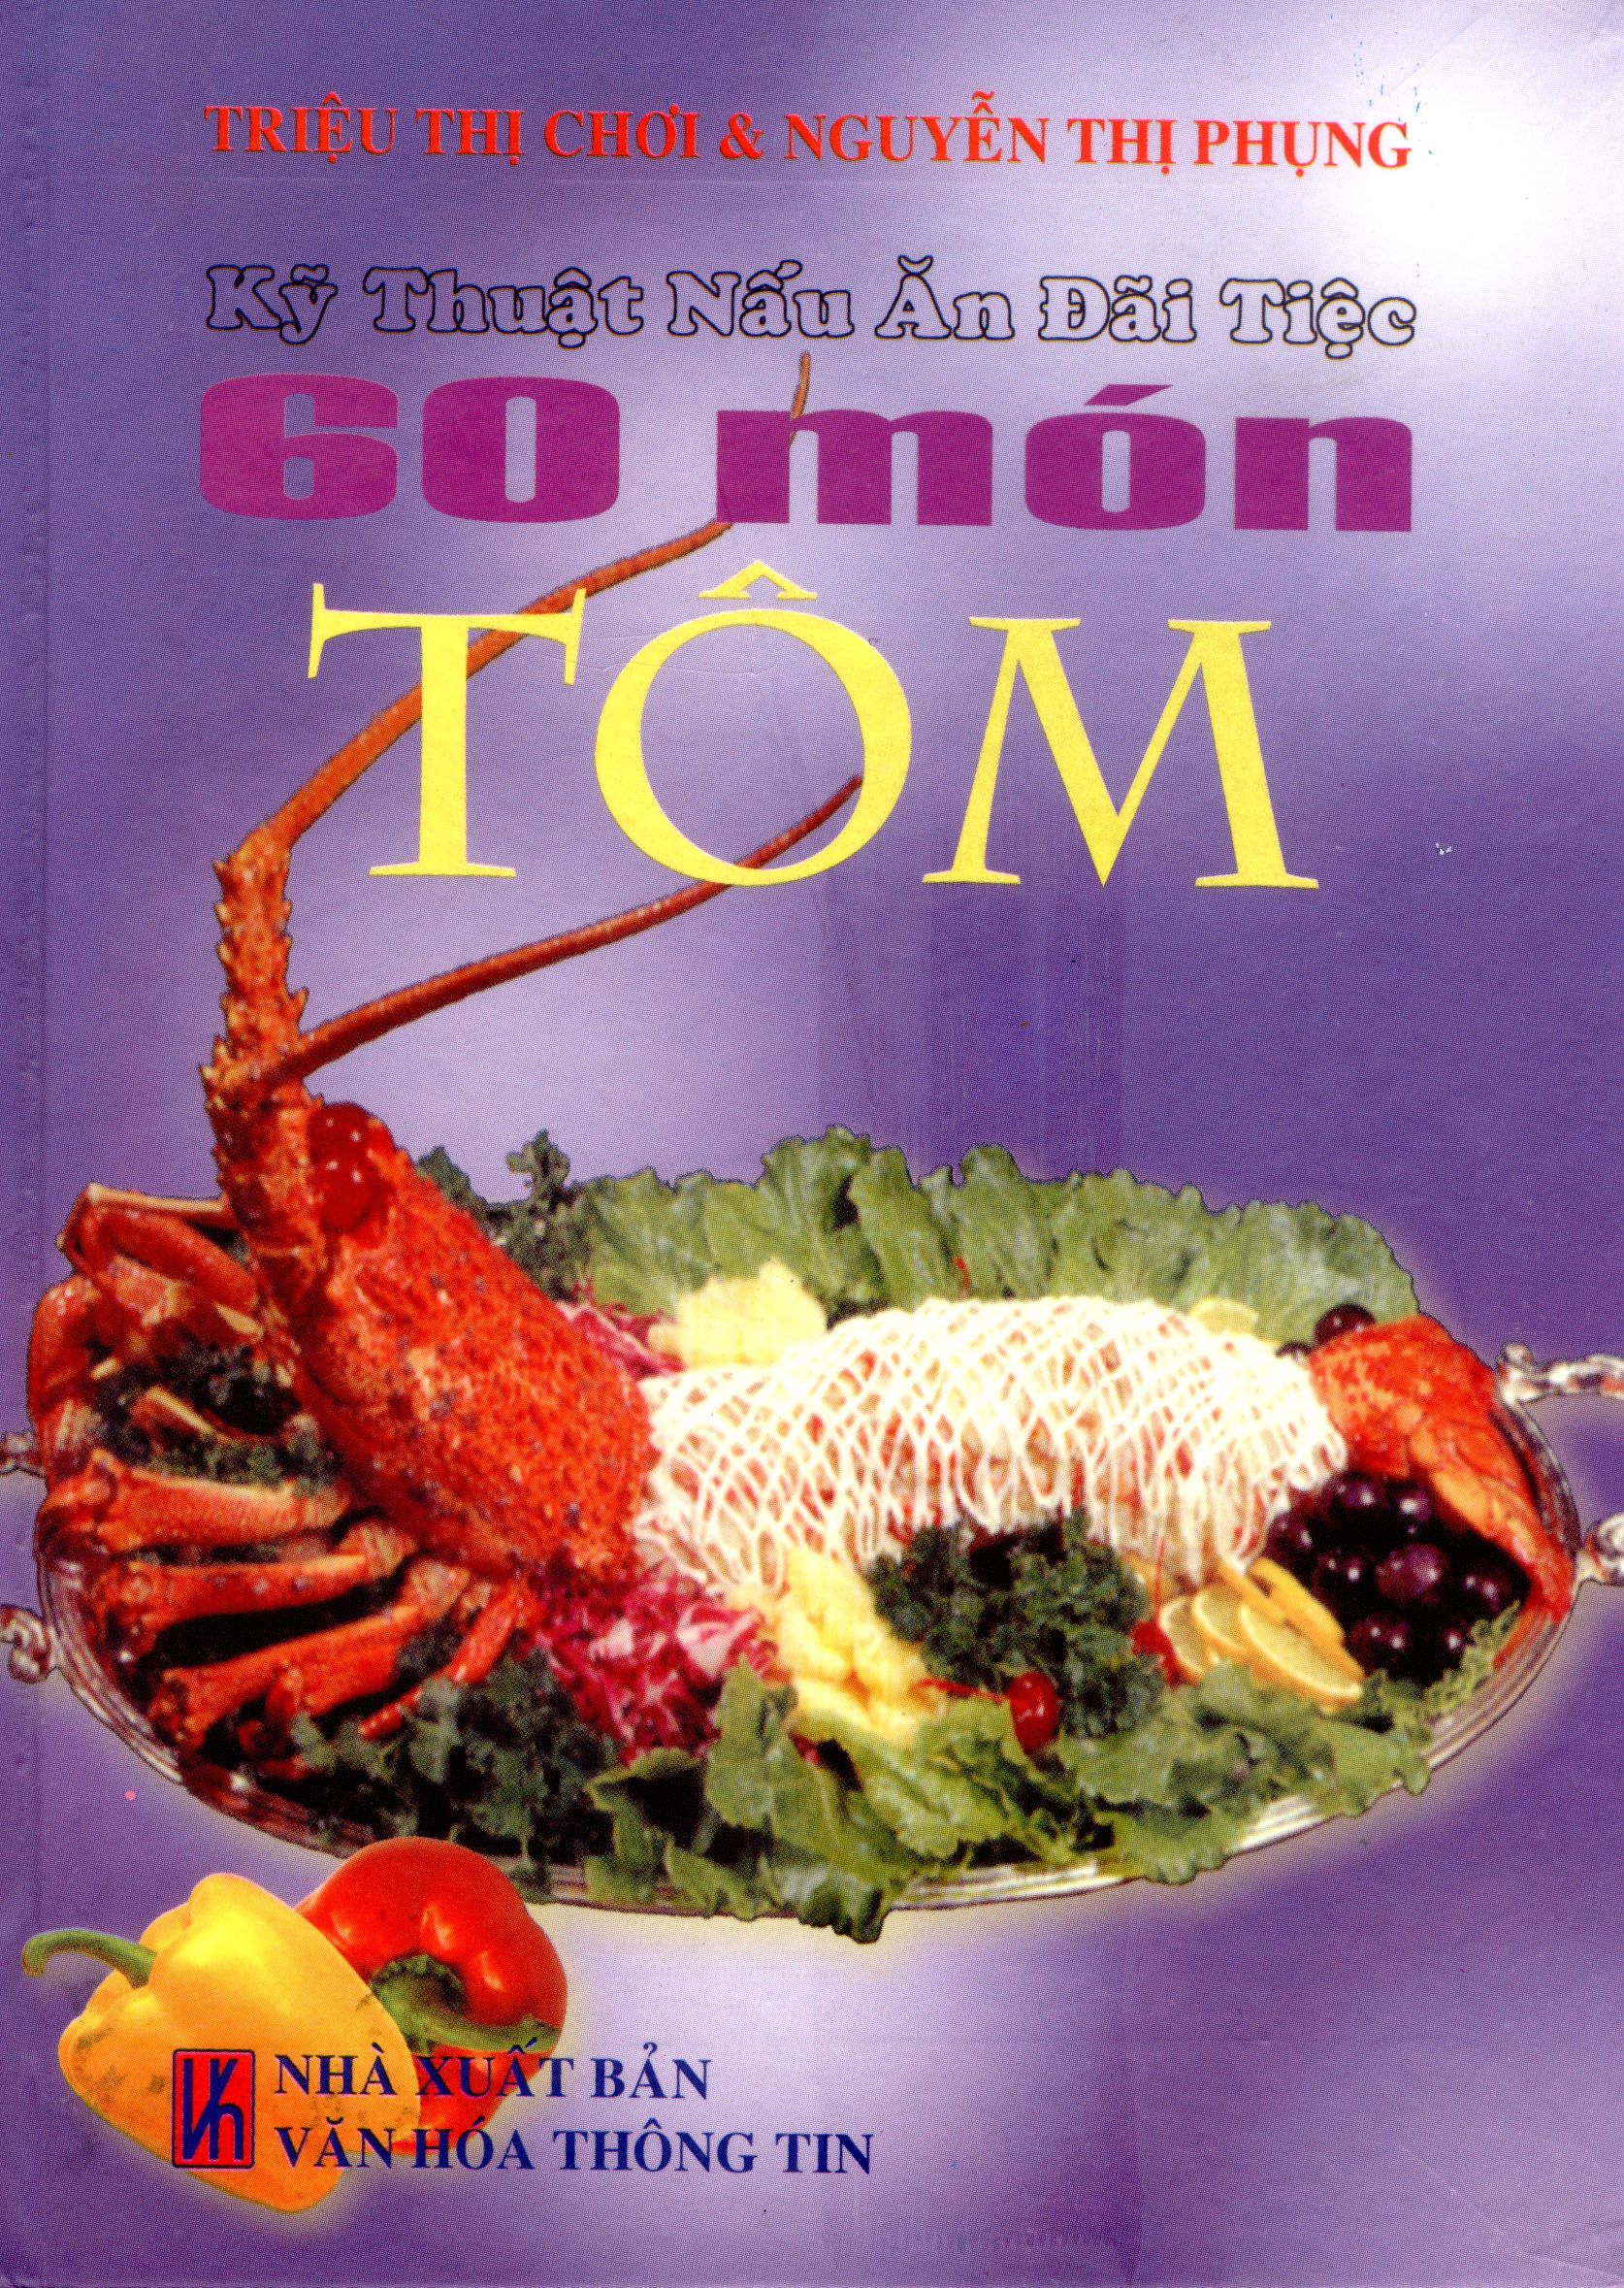 Kỹ Thuật Nấu Ăn Đãi Tiệc - 60 Món Tôm